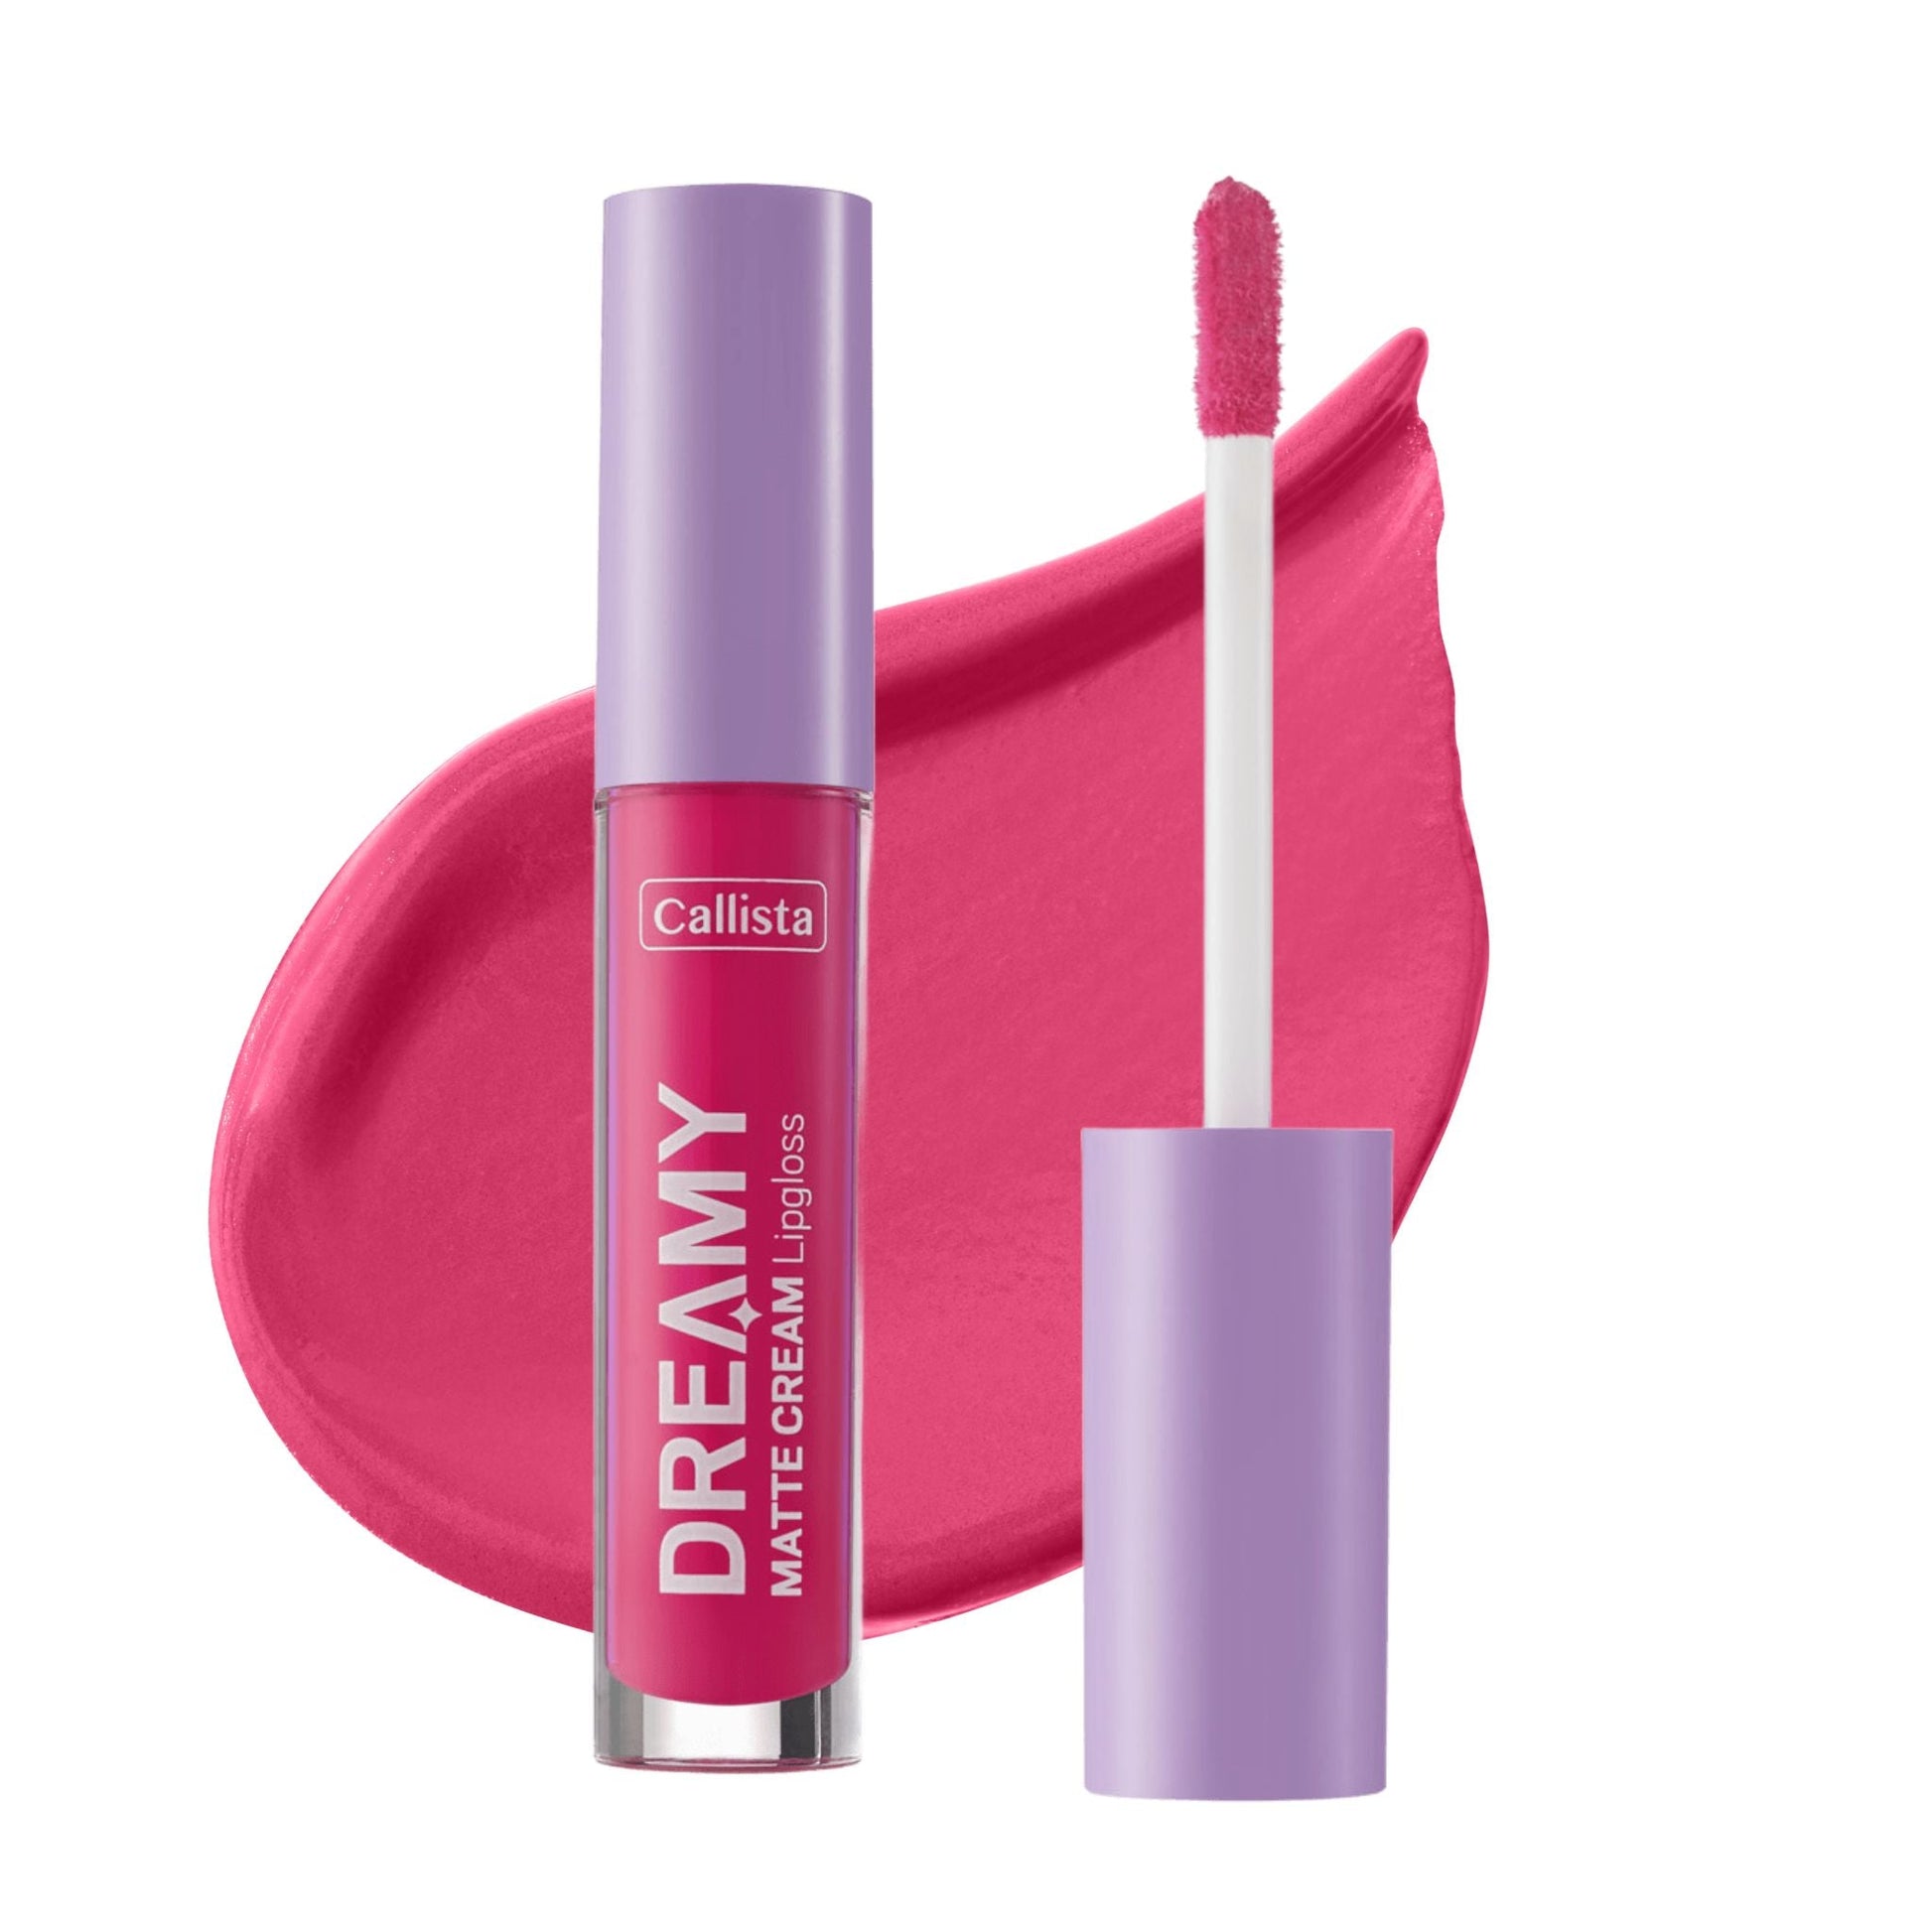 Callista Beauty Dreamy Matte Cream Lip Gloss